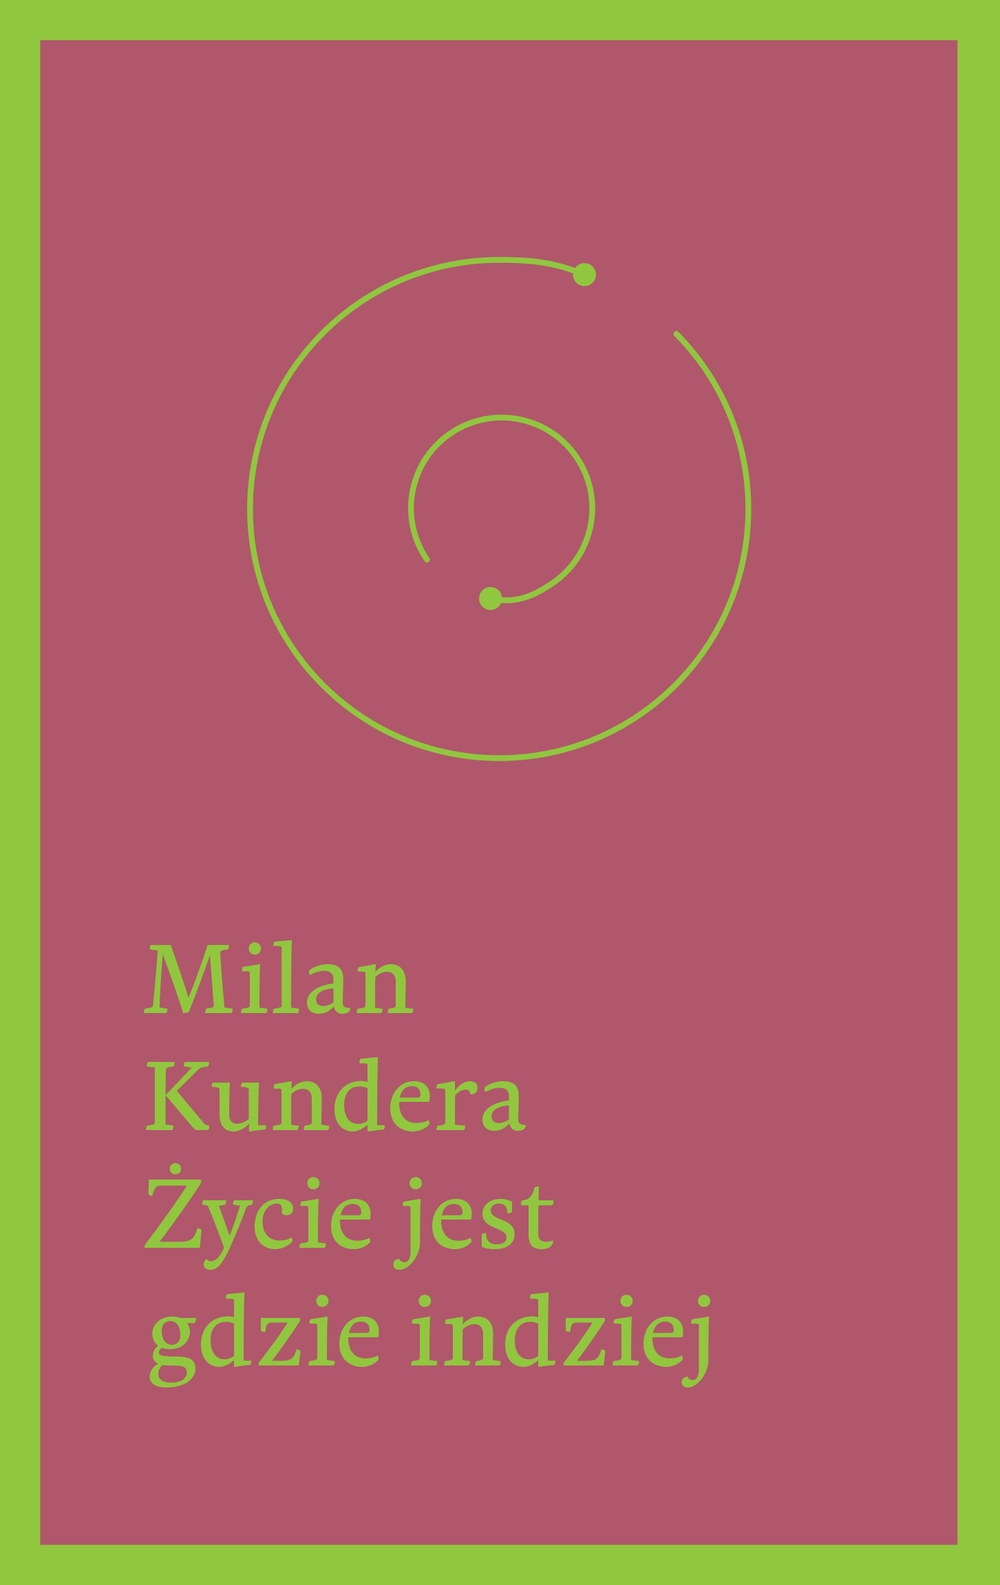 For title 'Życie jest gdzie indziej' cover was not found